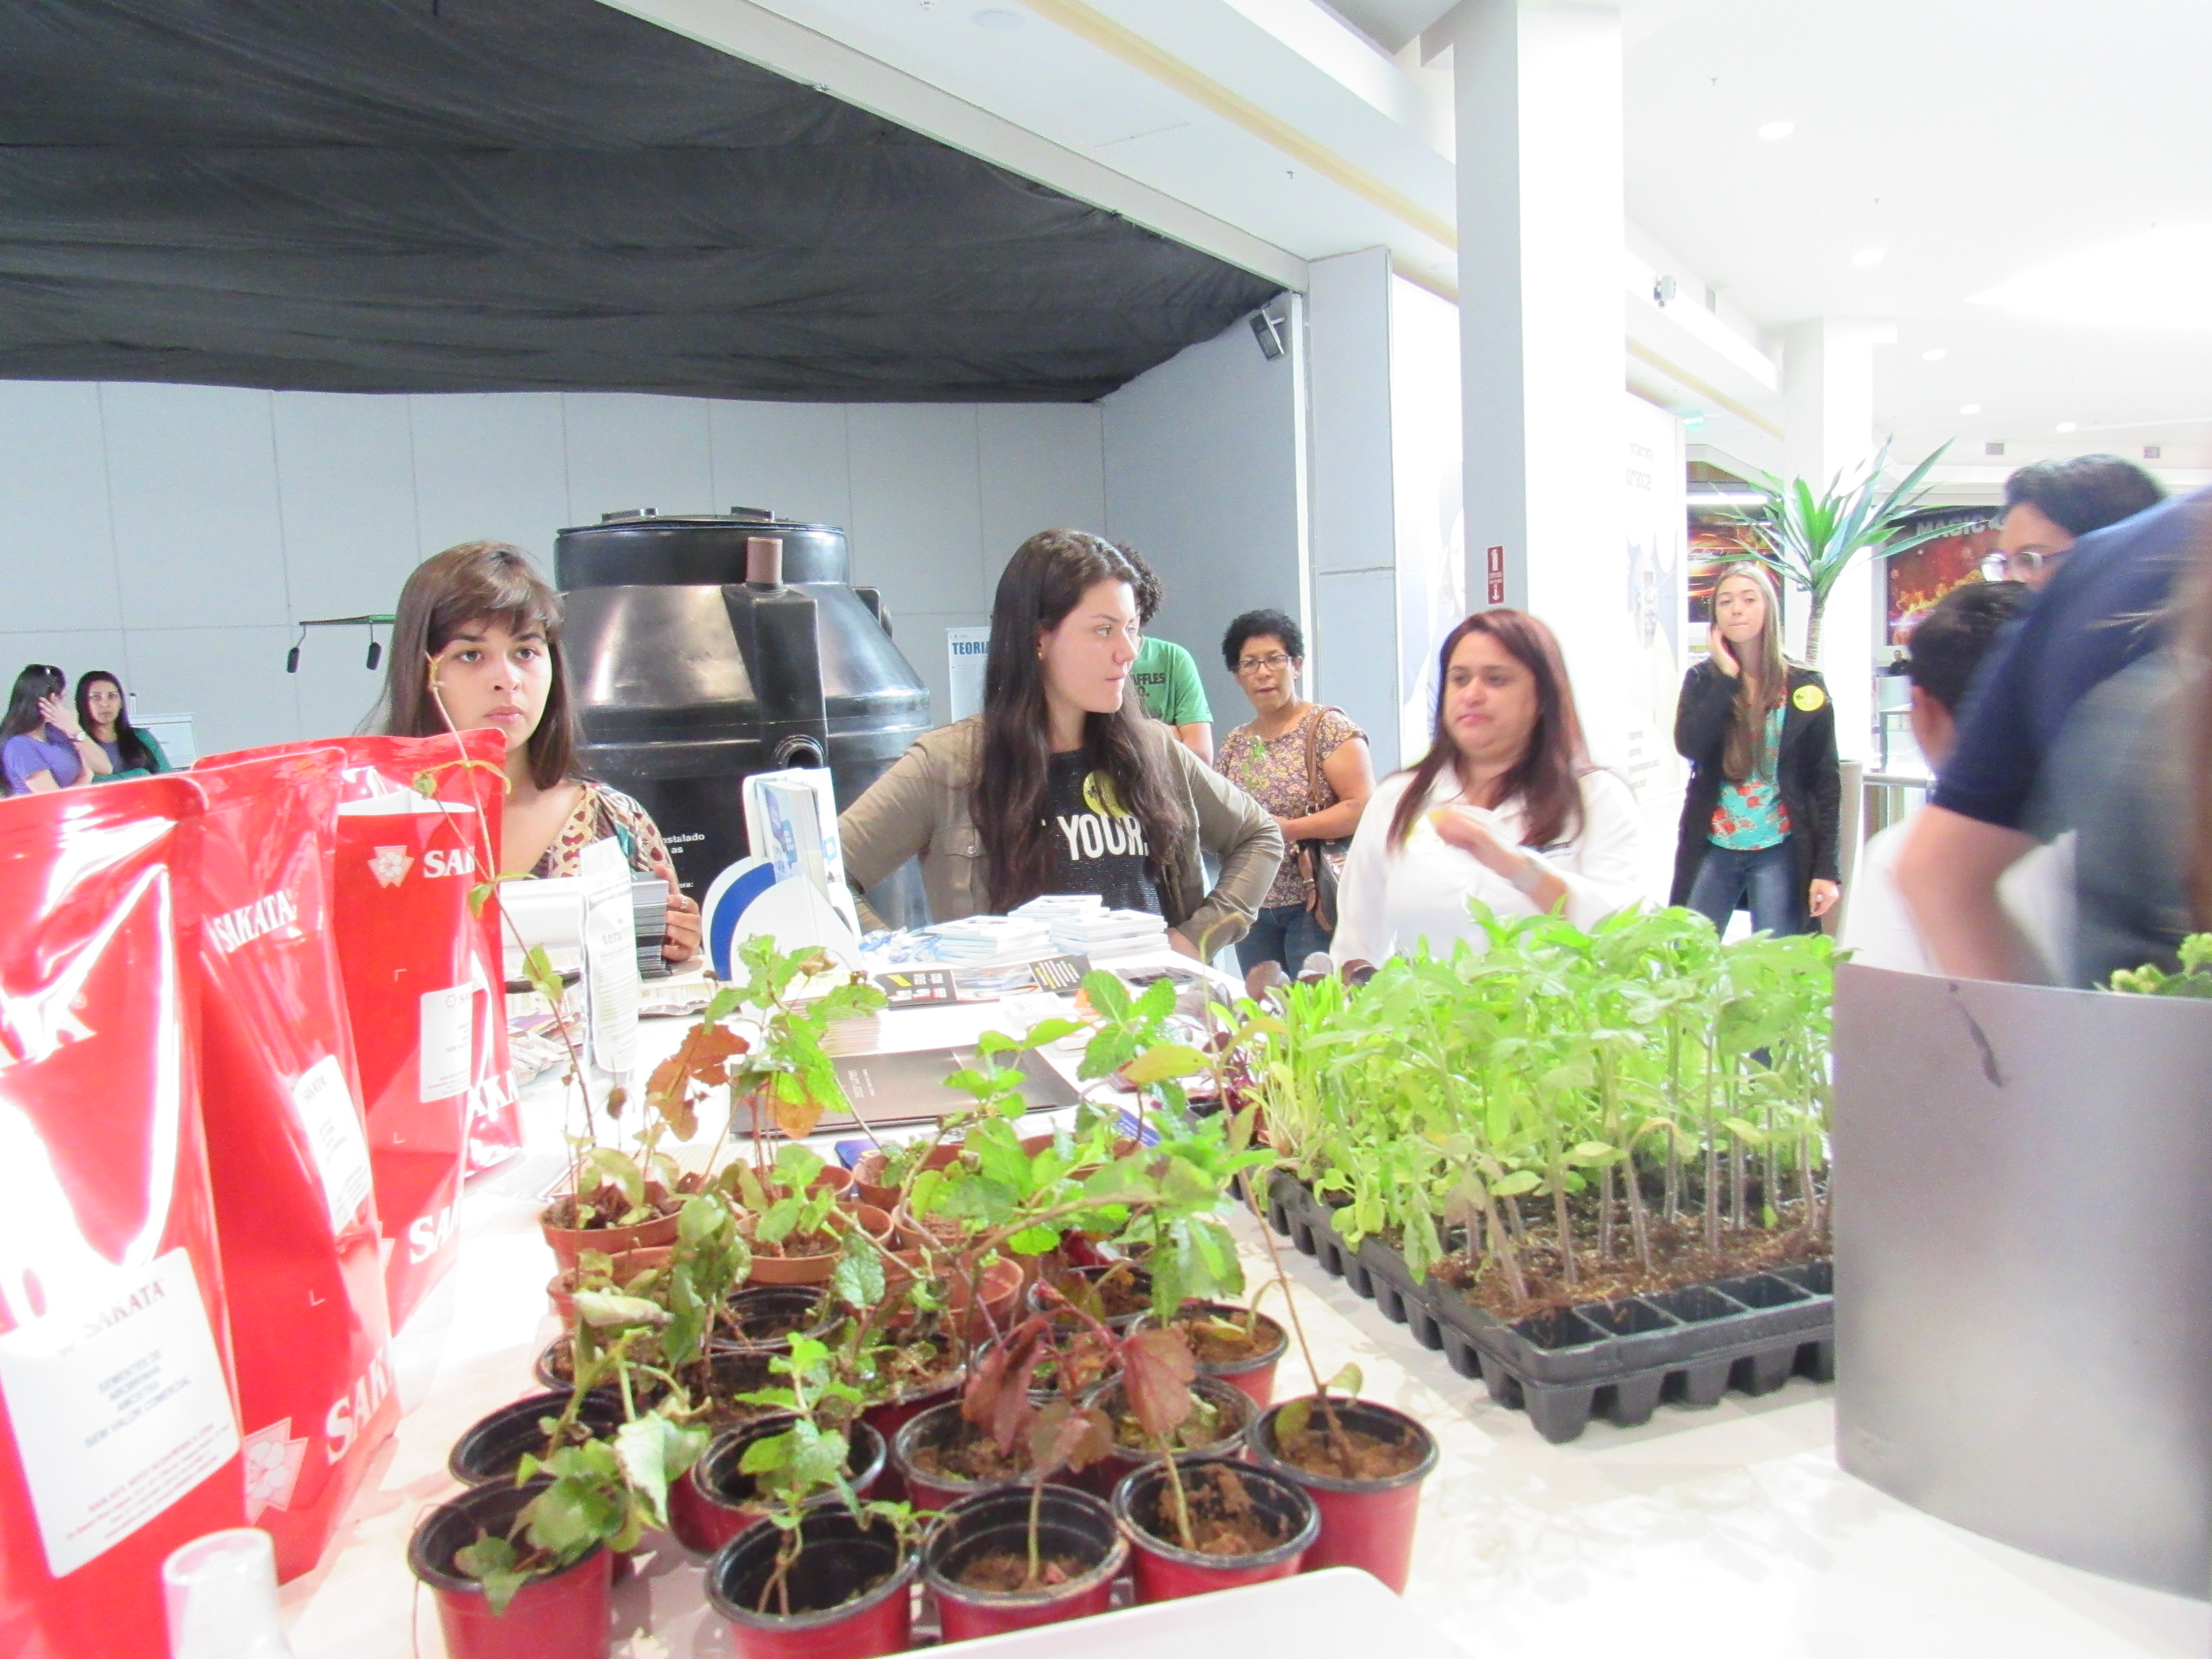 Alunos da USF realizam atividades no Bragança Garden Shopping em celebração ao Dia Mundial do Meio Ambiente